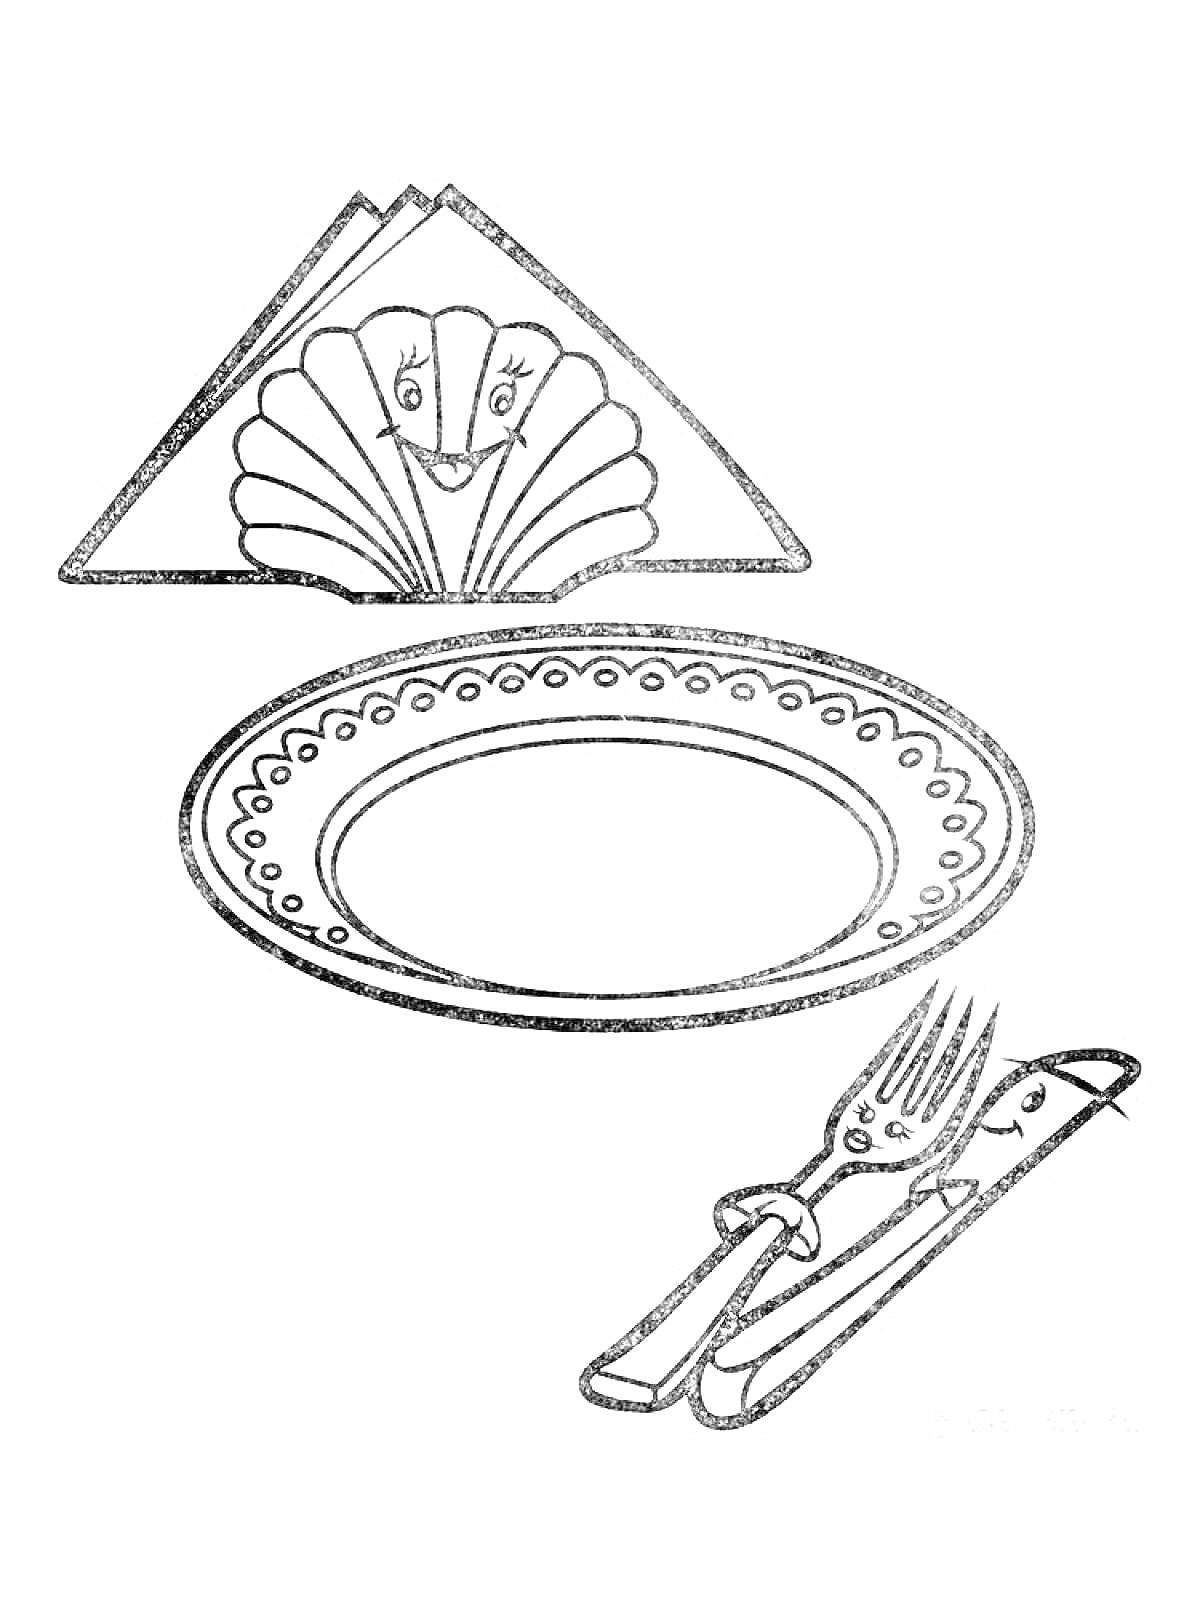 Тарелка с салфеткой, ножом и вилкой